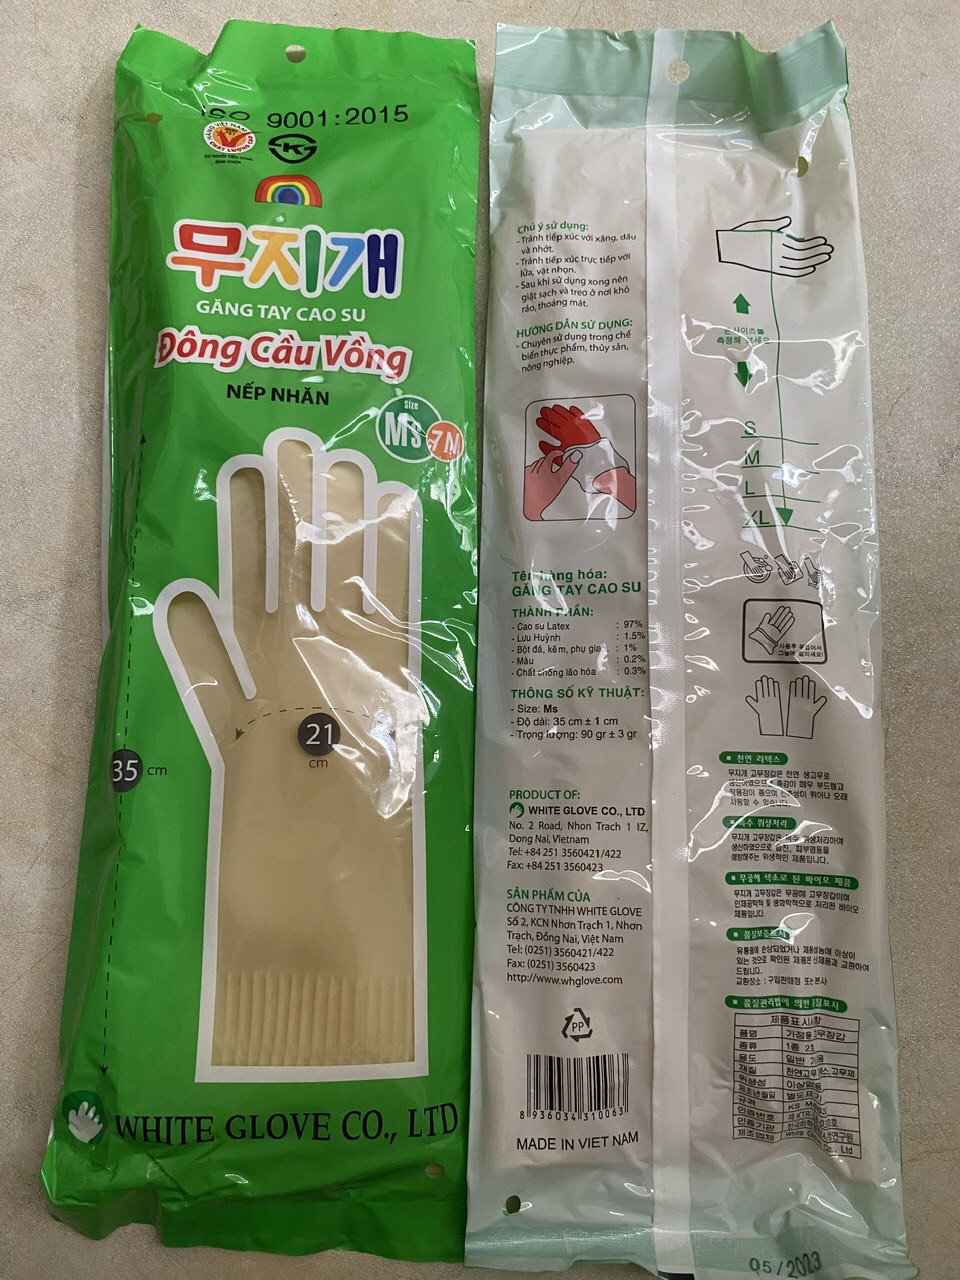 Găng tay cao su hàng về nhiều đầy đủ kích cỡ giá rẻ tại Nam Định, Găng tay cao su hàng về nhiều đầy đủ kích cỡ giá rẻ tại Ninh Bình – Hà Nam